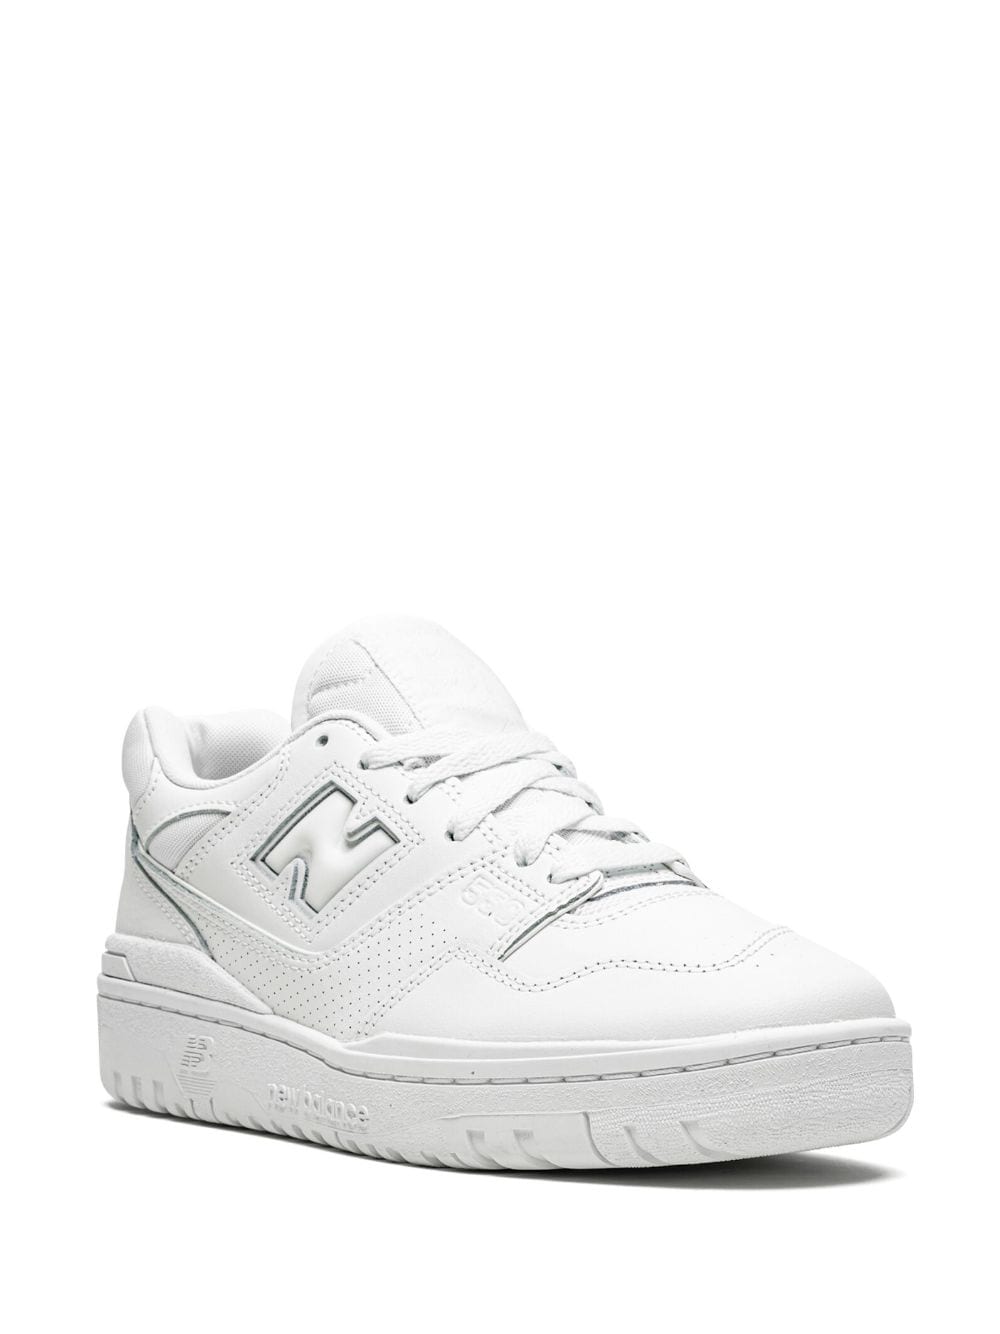 Shop New Balance 550 "triple White" Sneakers